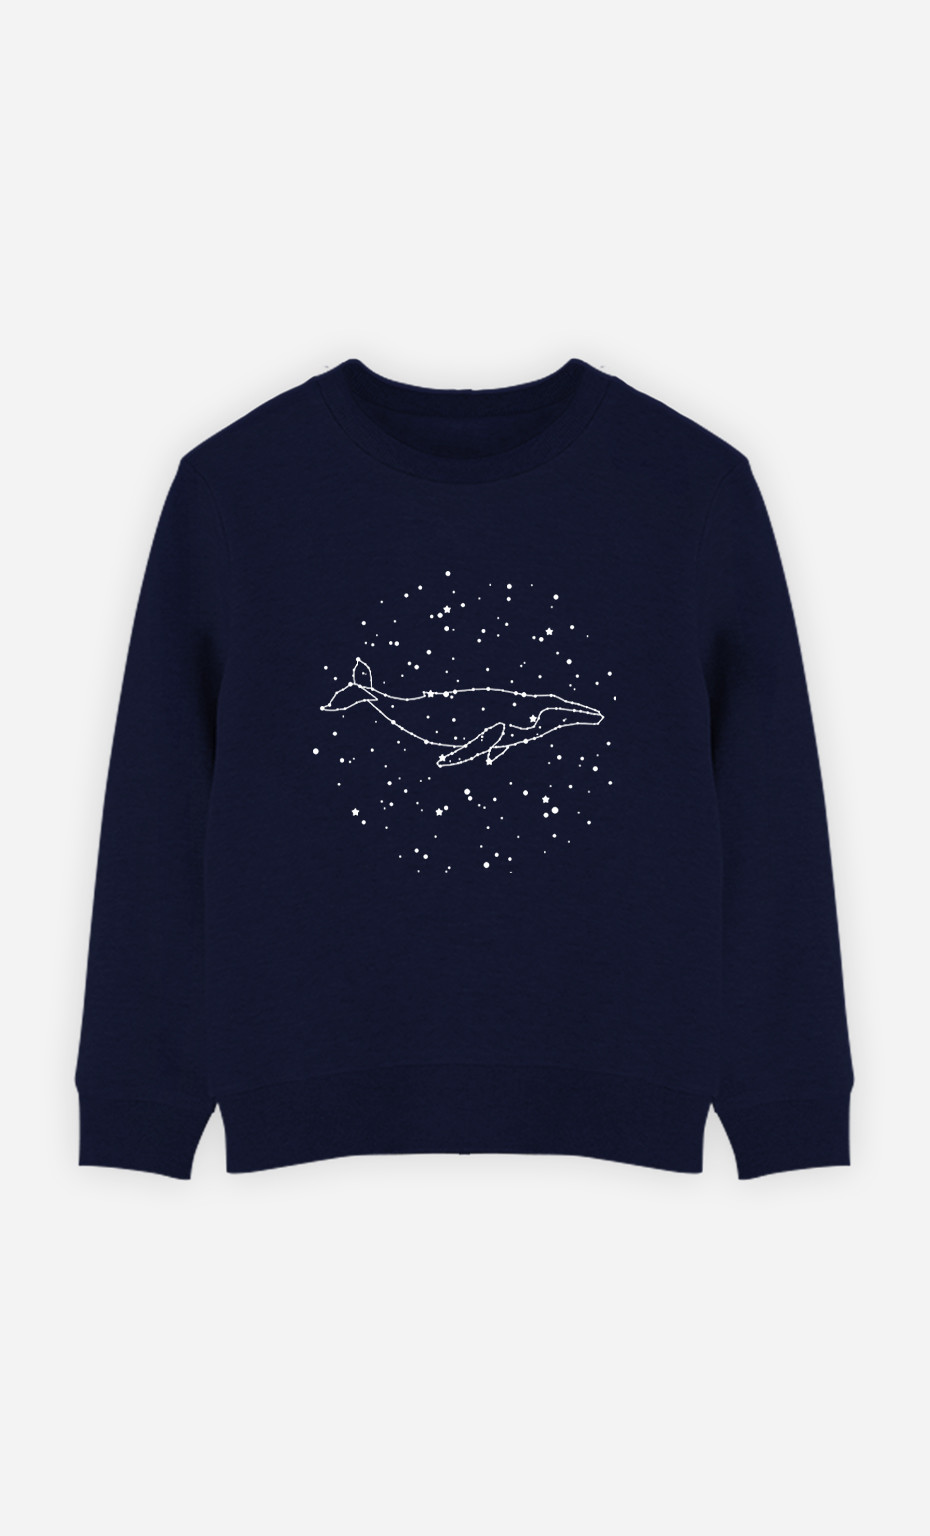 Kinder Sweatshirt Whale Constellation